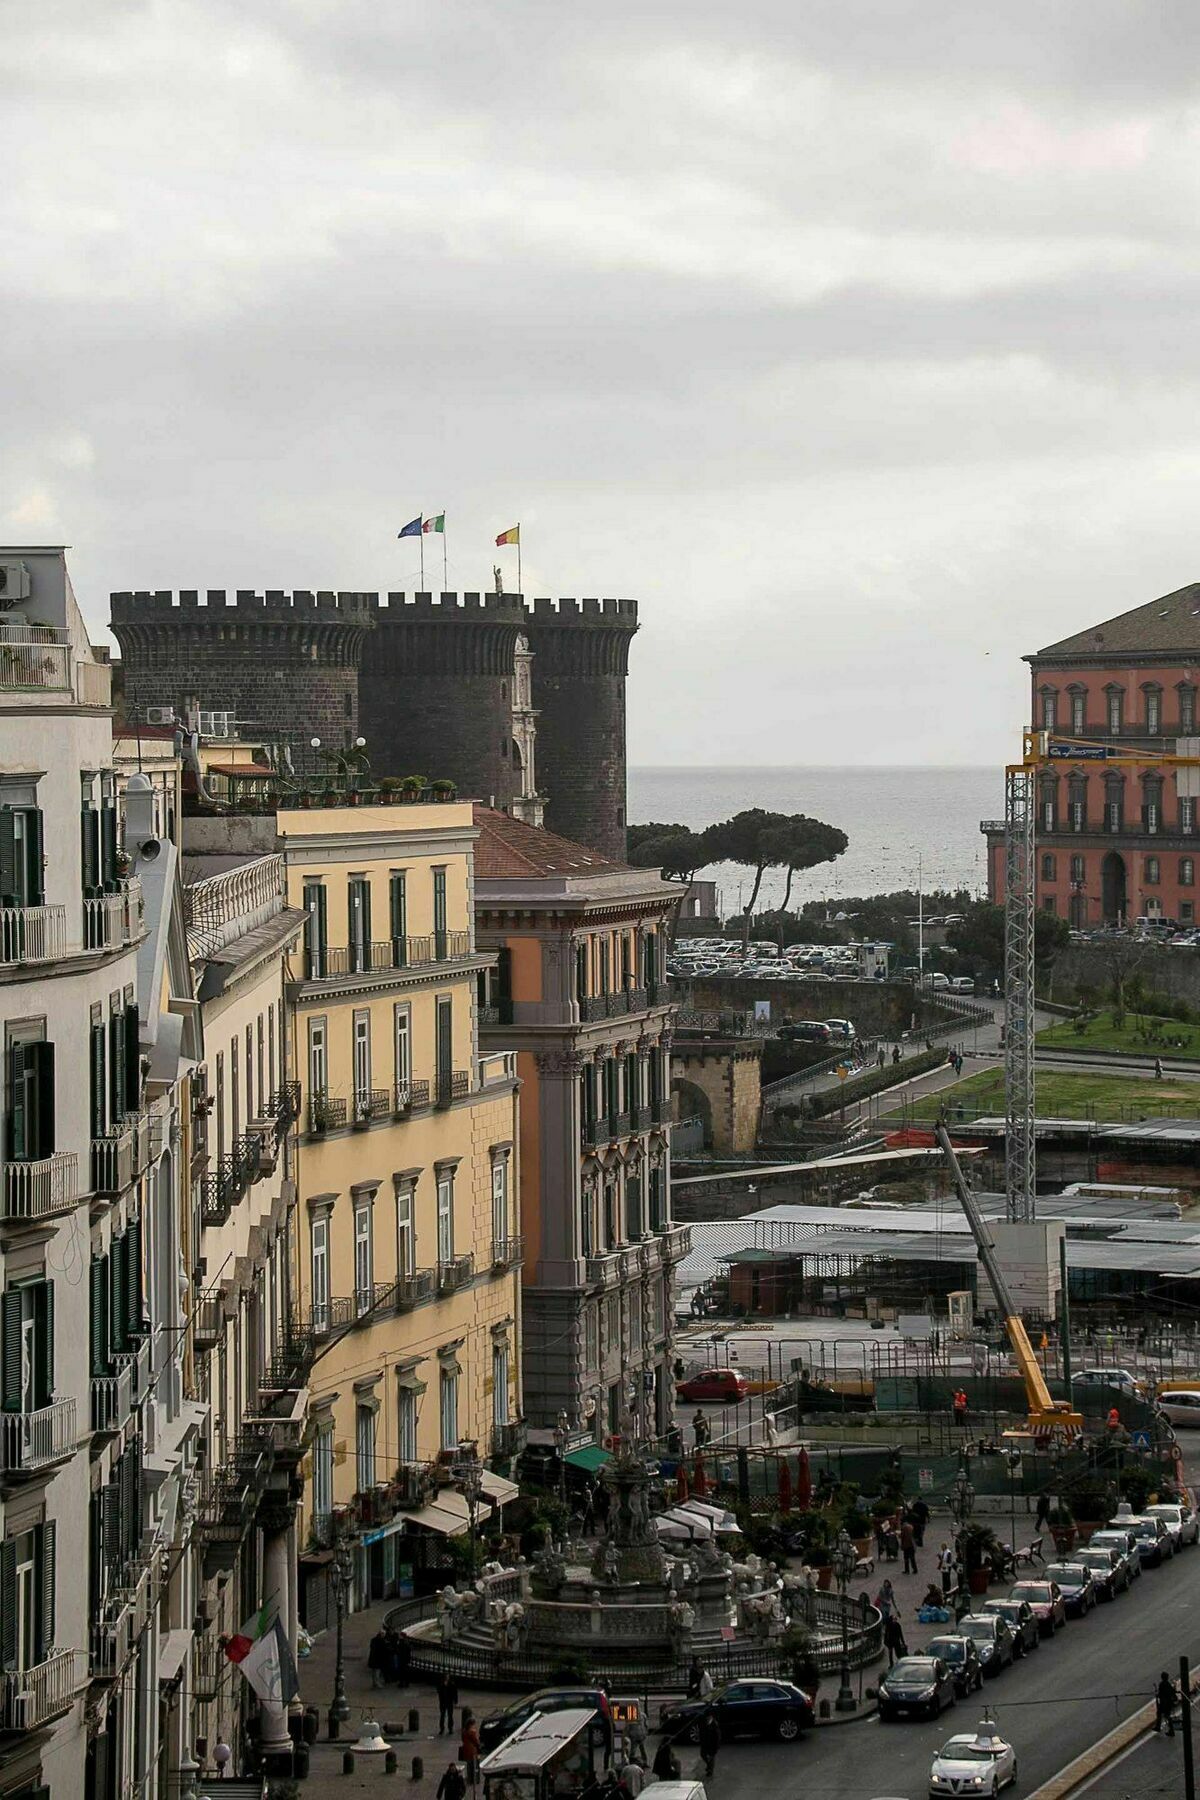 Fiorentini Residence Napoli Exterior foto